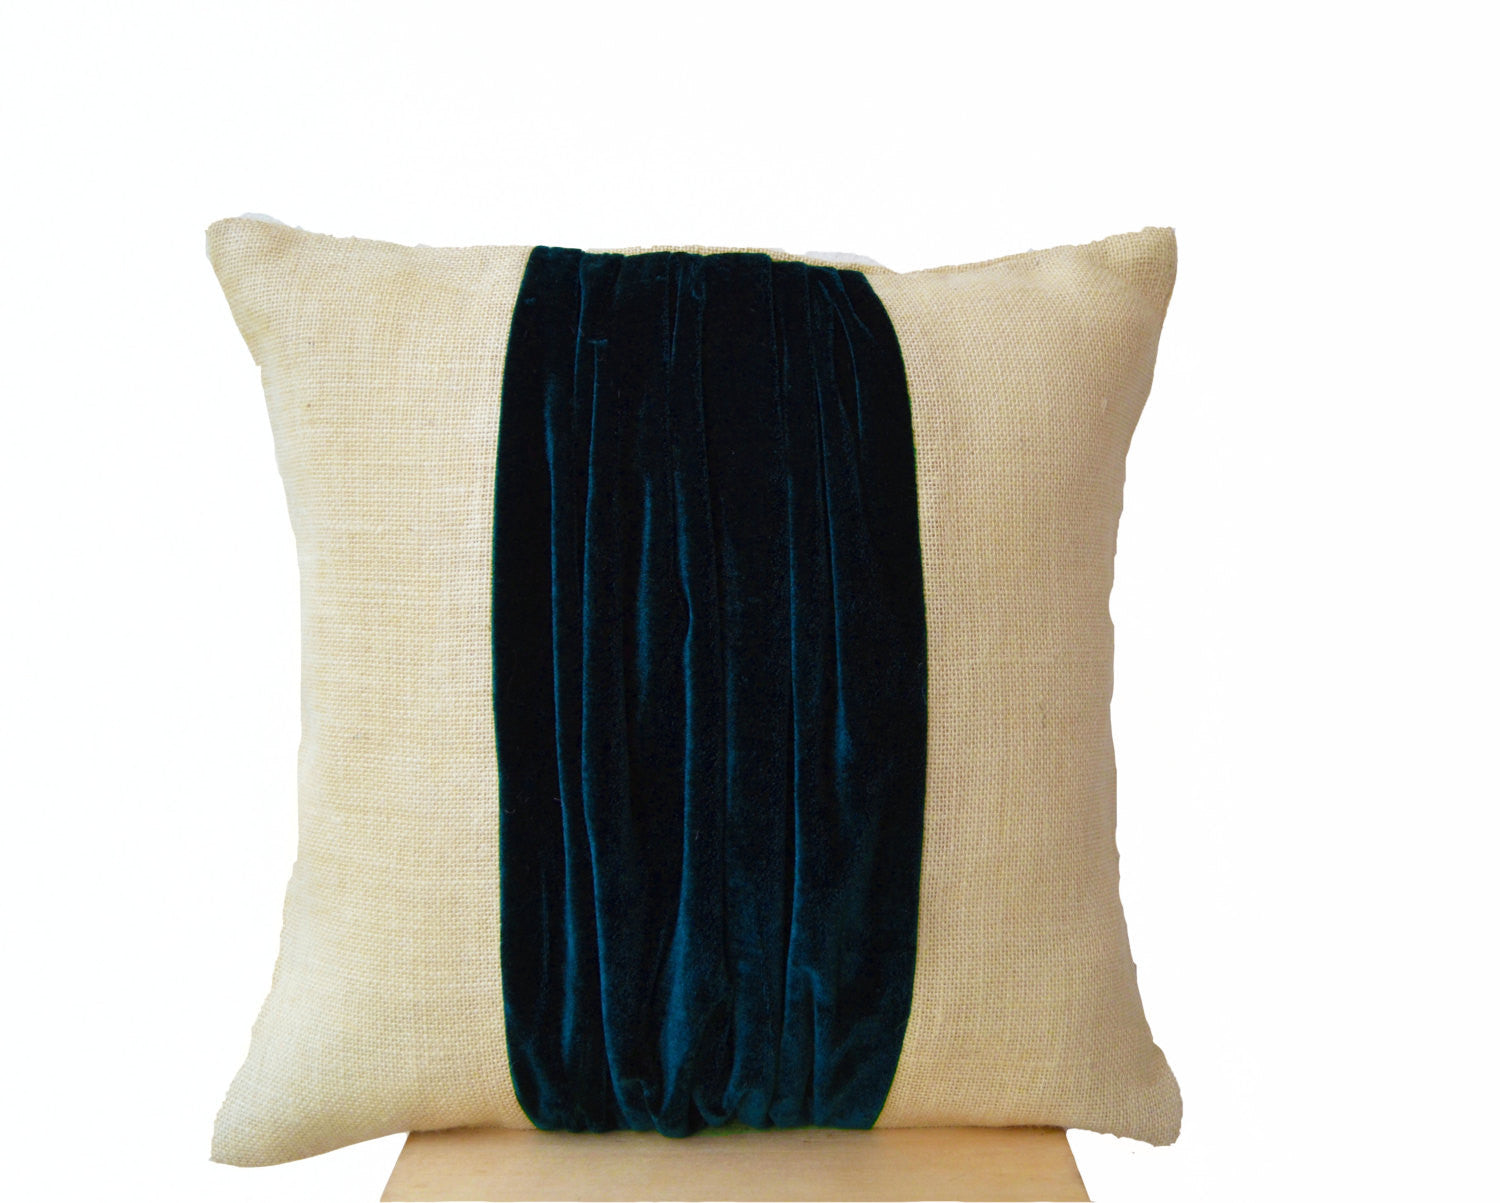 Handmade blue velvet and ivory throw pillow cover